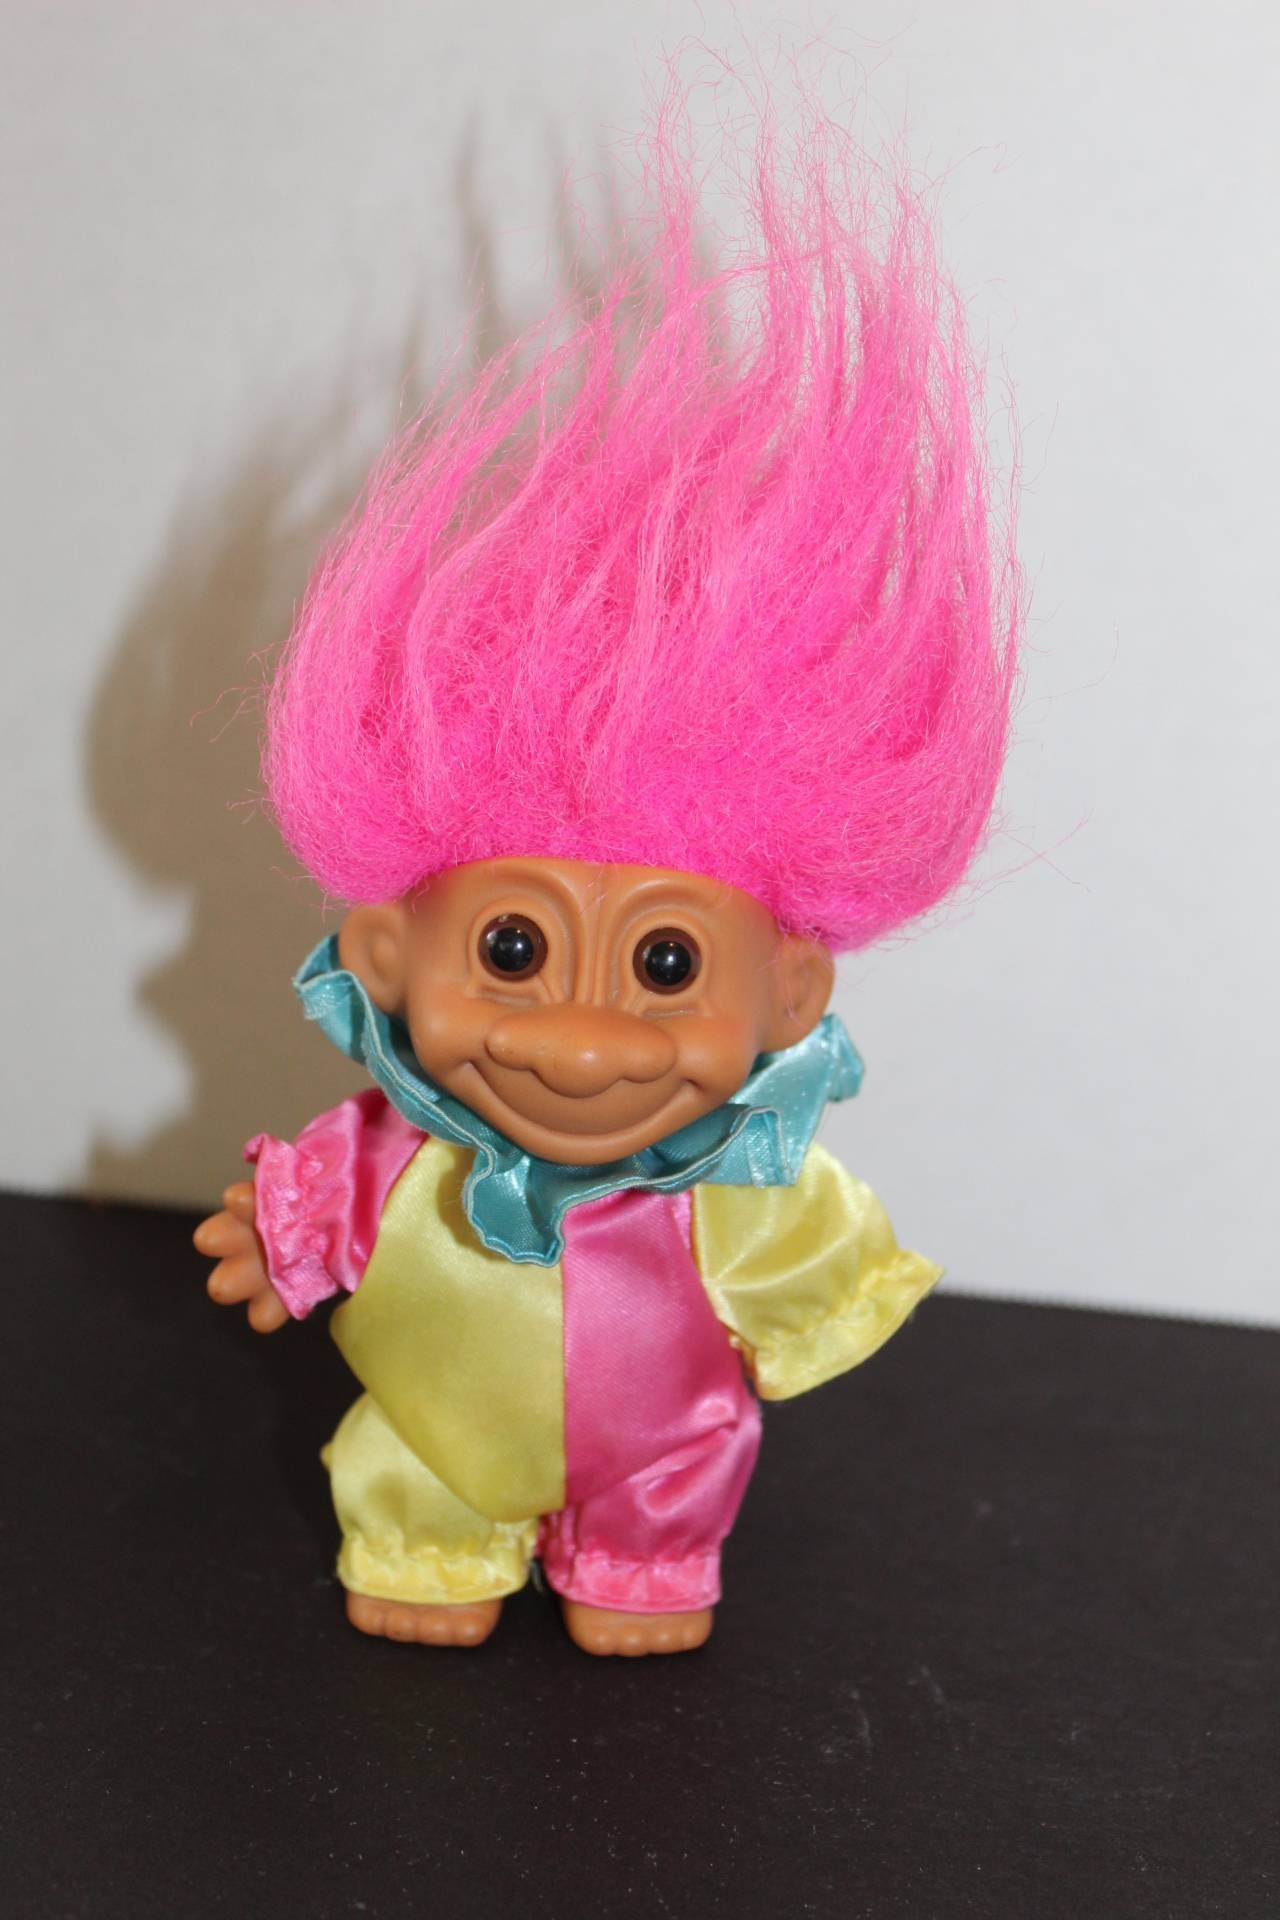 5" Russ Troll Doll HAPPY BIRTHDAY CLOWN NEW IN ORIGINAL WRAPPER